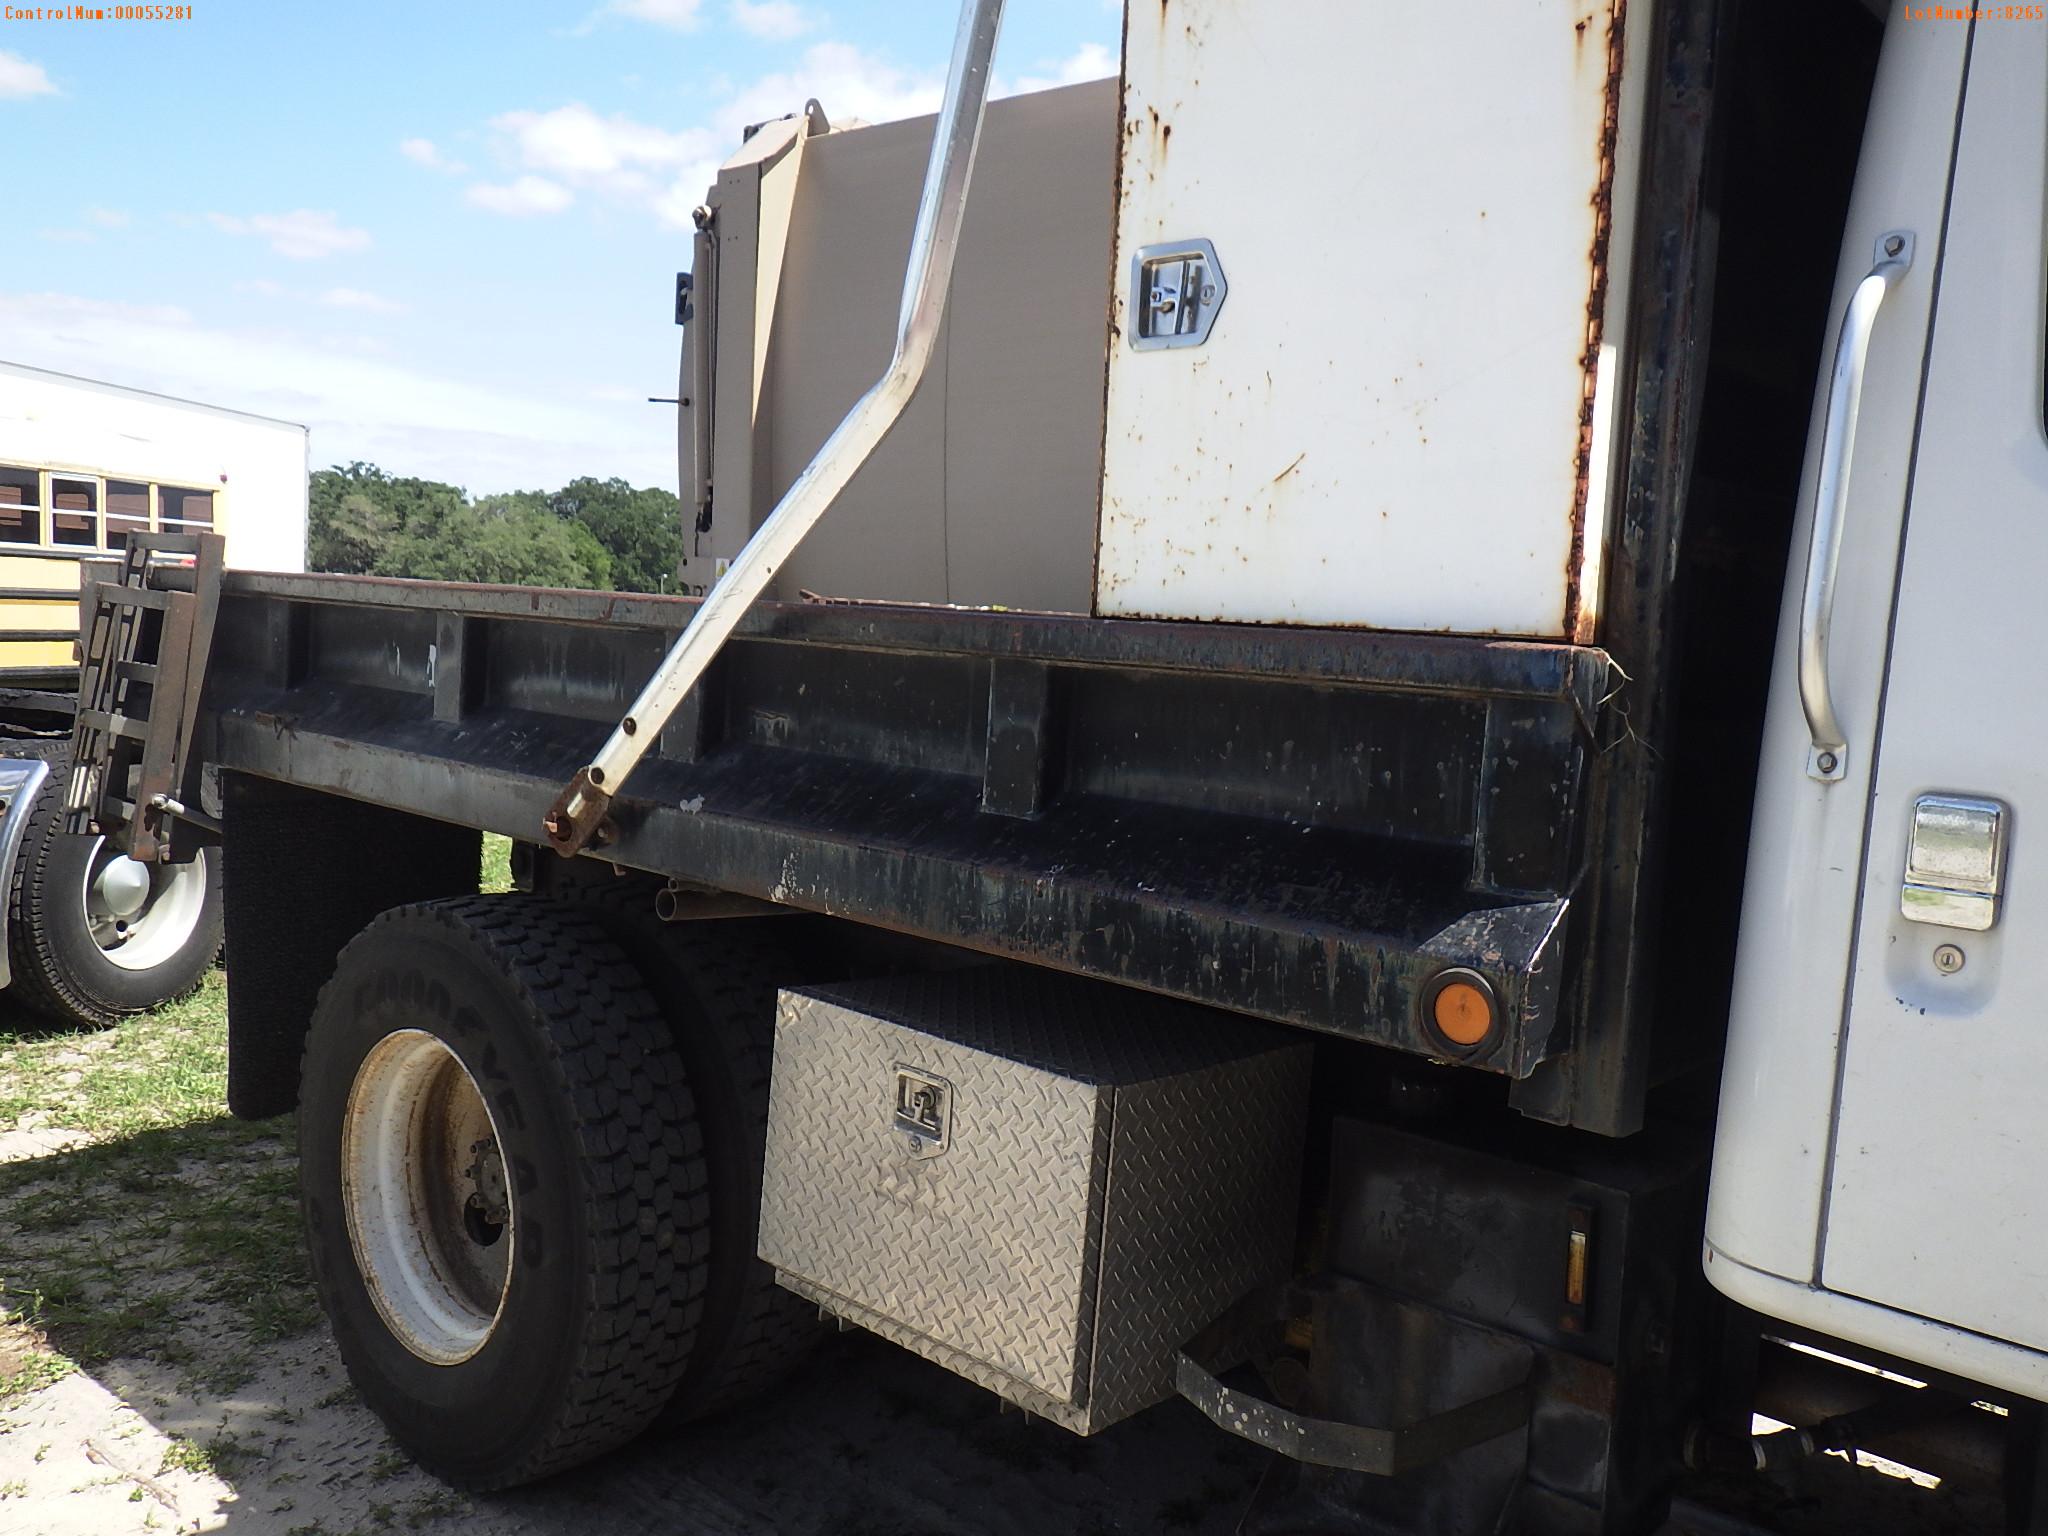 5-08265 (Trucks-Dump)  Seller: Gov-City Of Clearwater 2001 INTL 4700